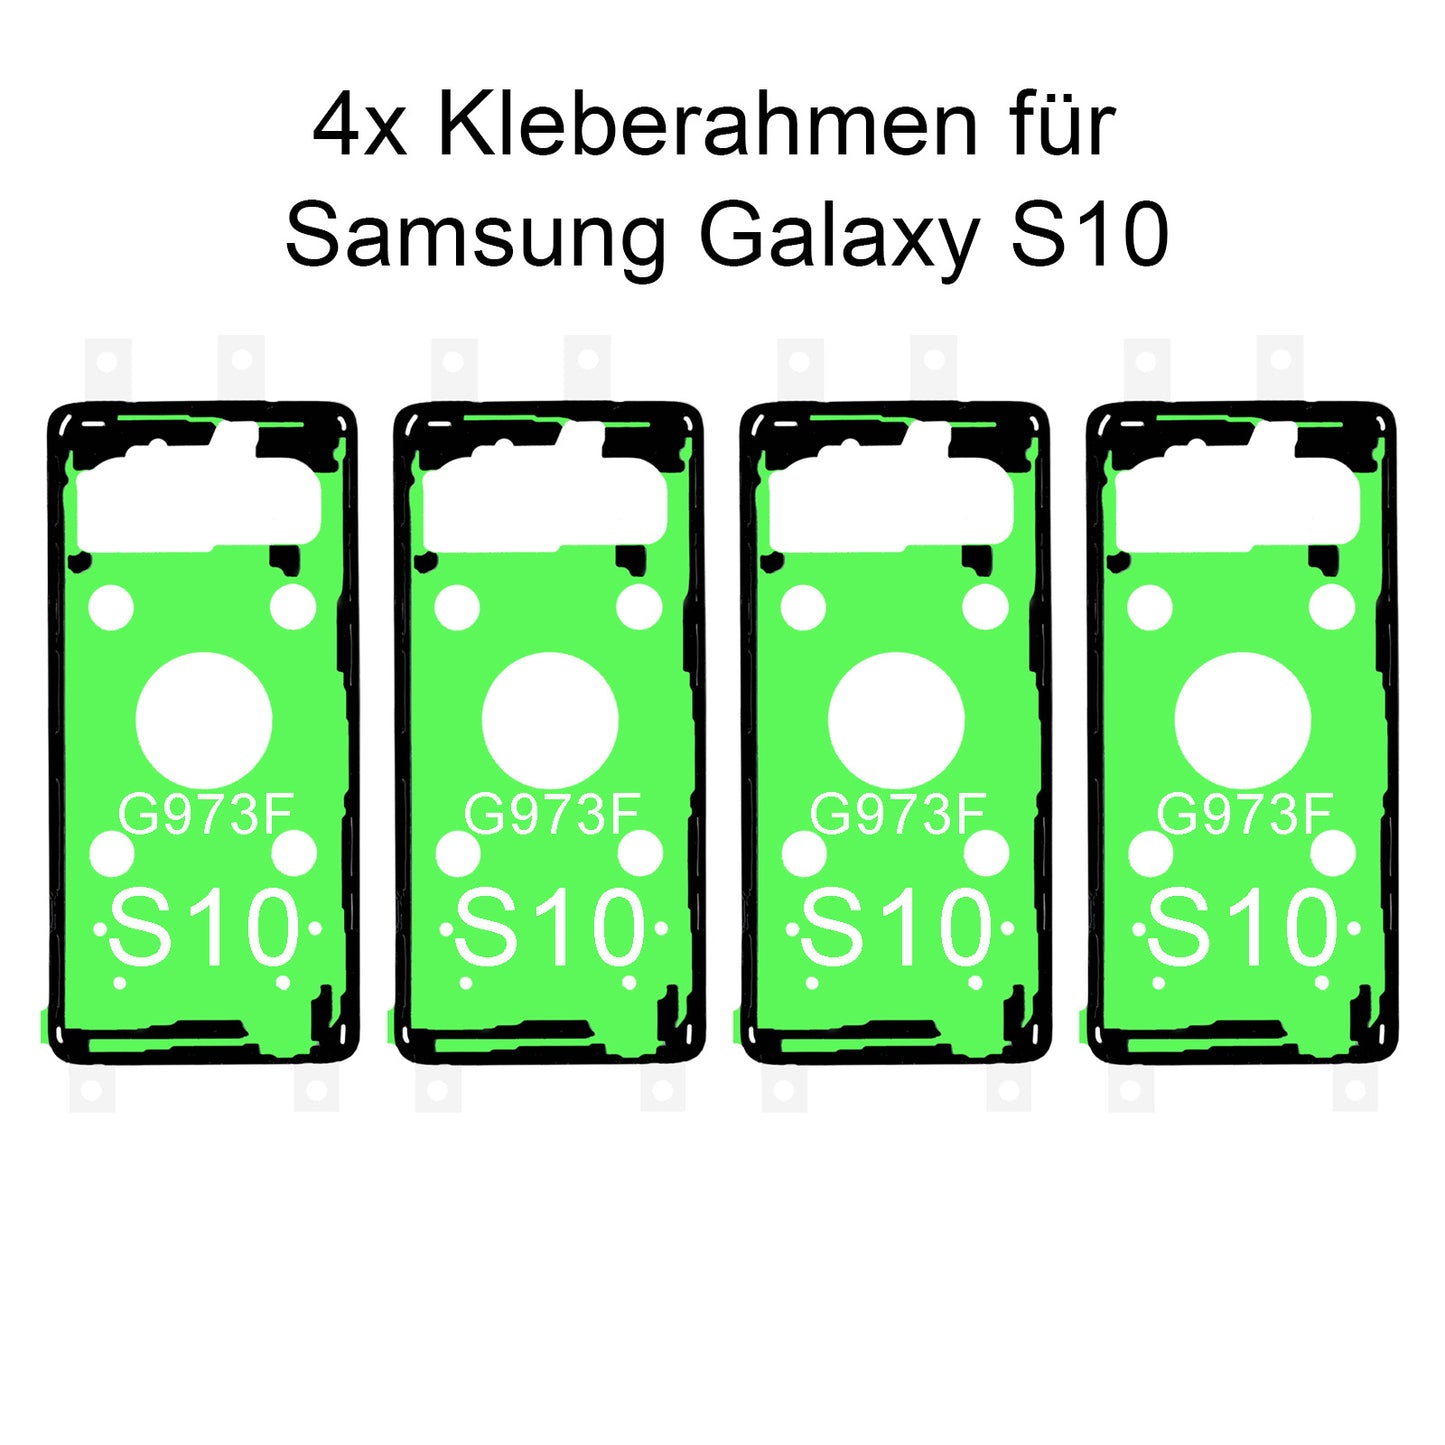 4x von unsern Samsung Galaxy S10 G973F Kleberahmen, jetzt im Dinngsonline Shop entdecken und bestellen!